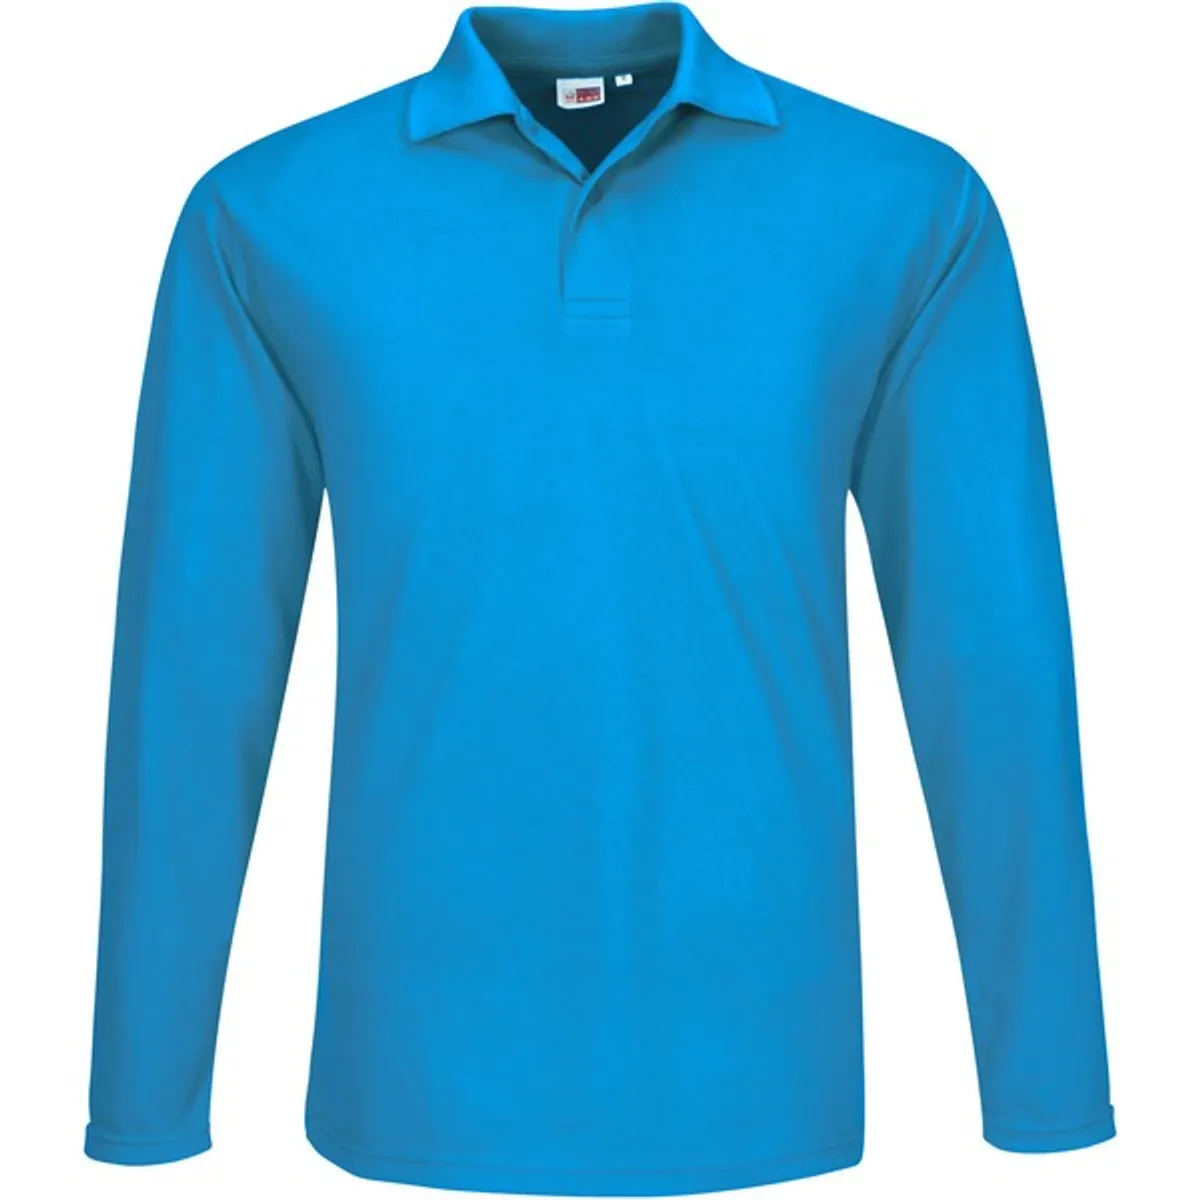 Mens Long Sleeve Elemental Golf Shirt | Creative Brands